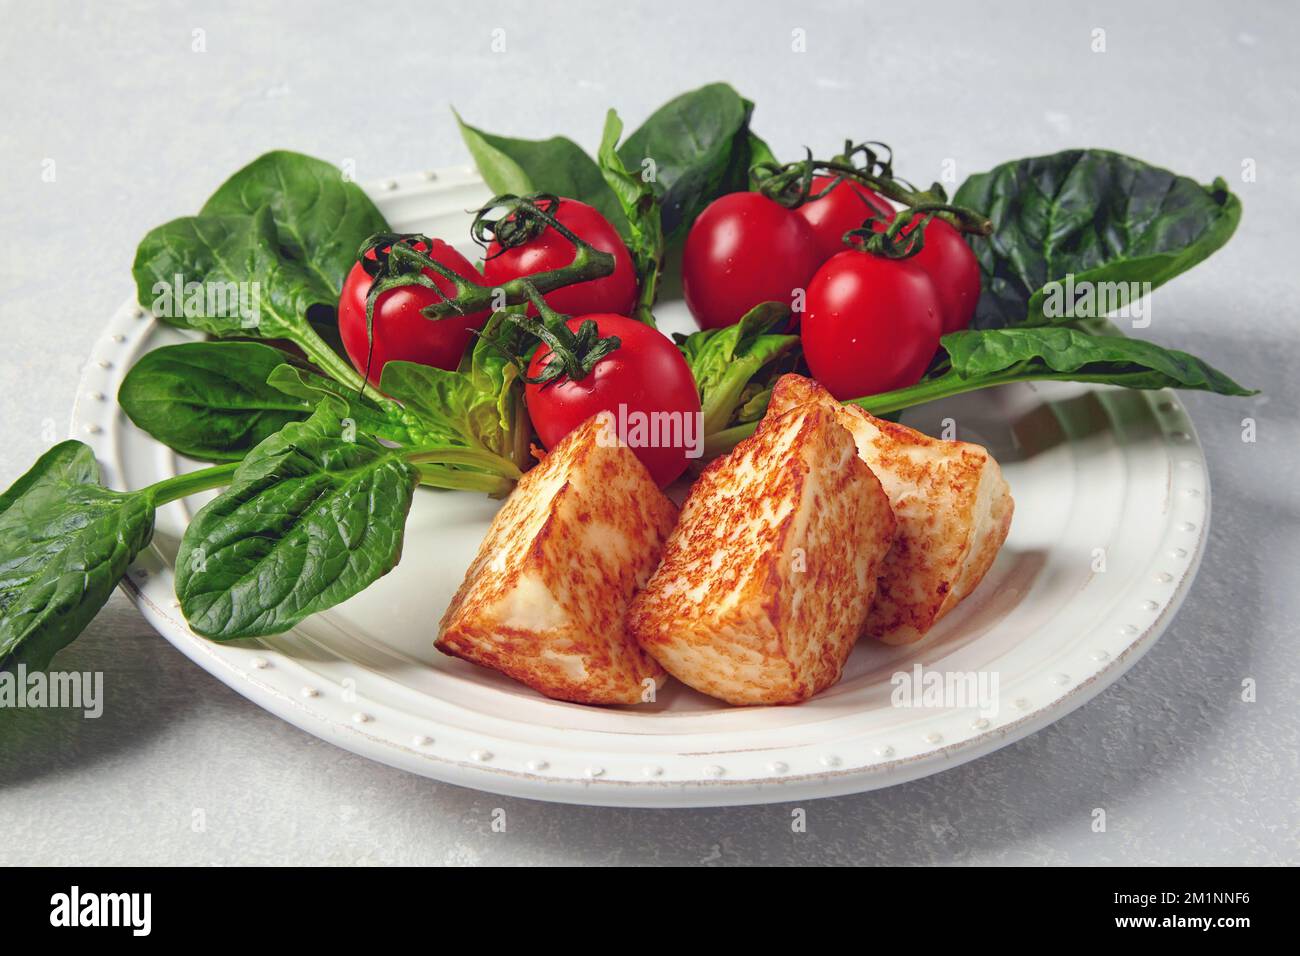 Mozzarella halloumi fritta con pomodori ciliegini e spinaci verdi su un tavolo grigio in cemento Foto Stock